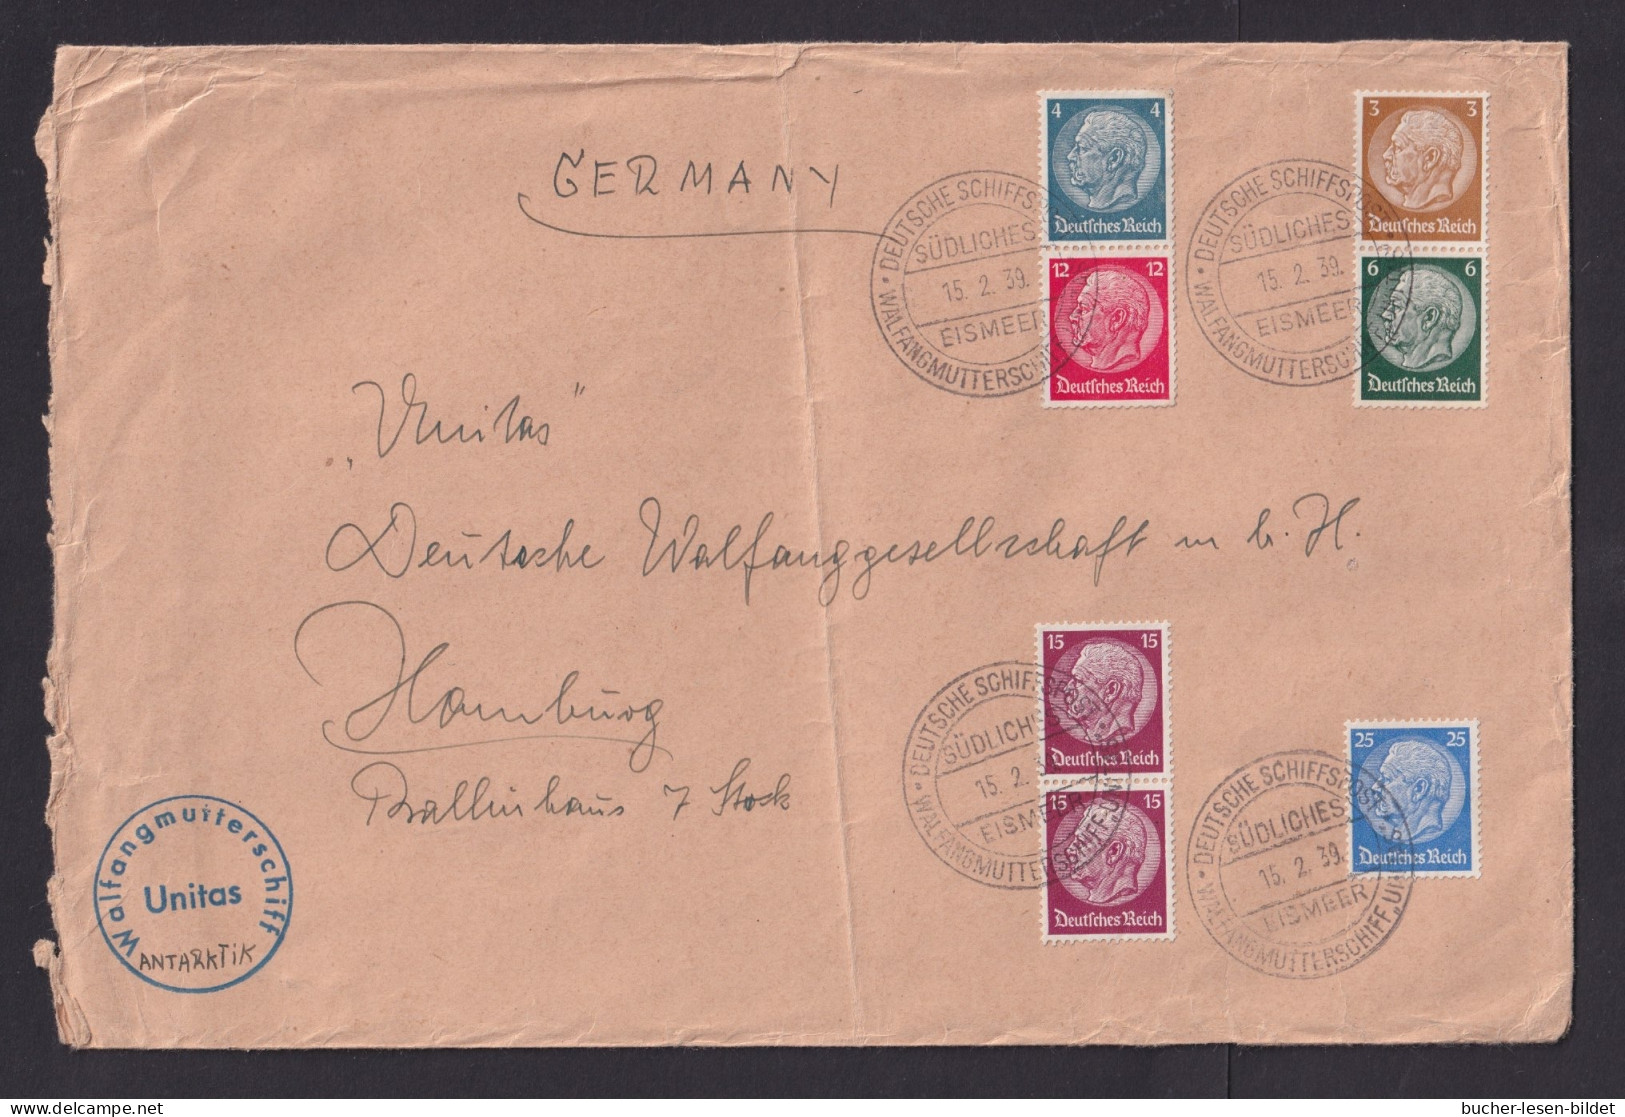 1939 - Bedarfsbrief Mit Schiffstempel "Walfangflotte Südliches Eismeer Unitas" - SEHR  SELTEN - Whales